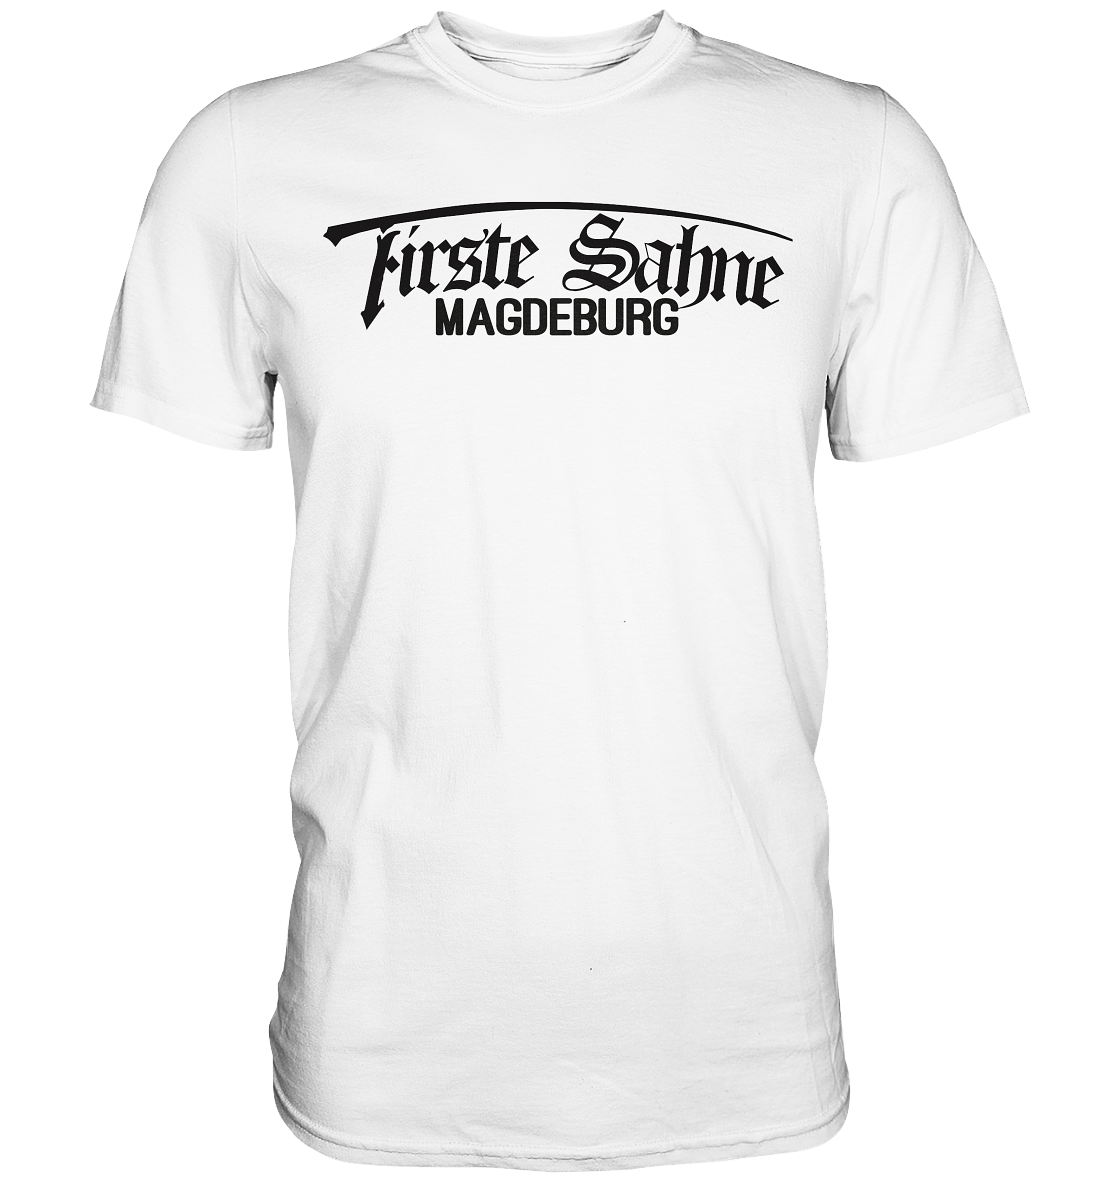 Firste Sahne - Premium Shirt